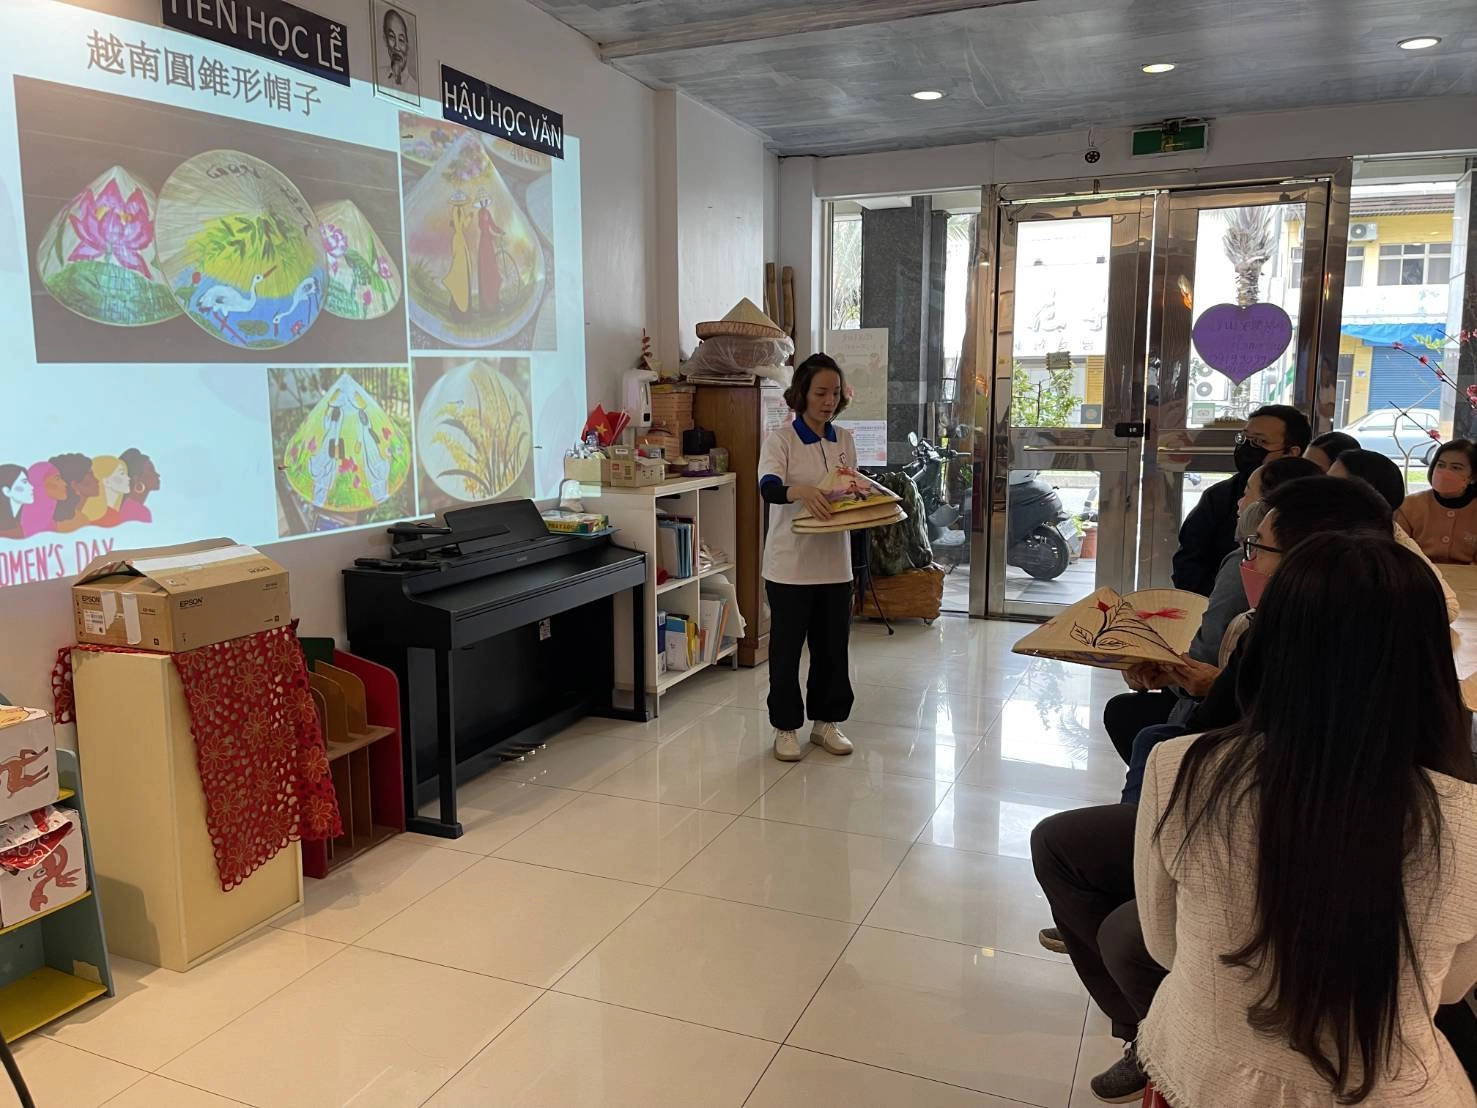 多元文化講師陶氏桂(站立者)為上課學員講解越南斗笠的起源傳說及如何彩繪一頂越南斗笠。
